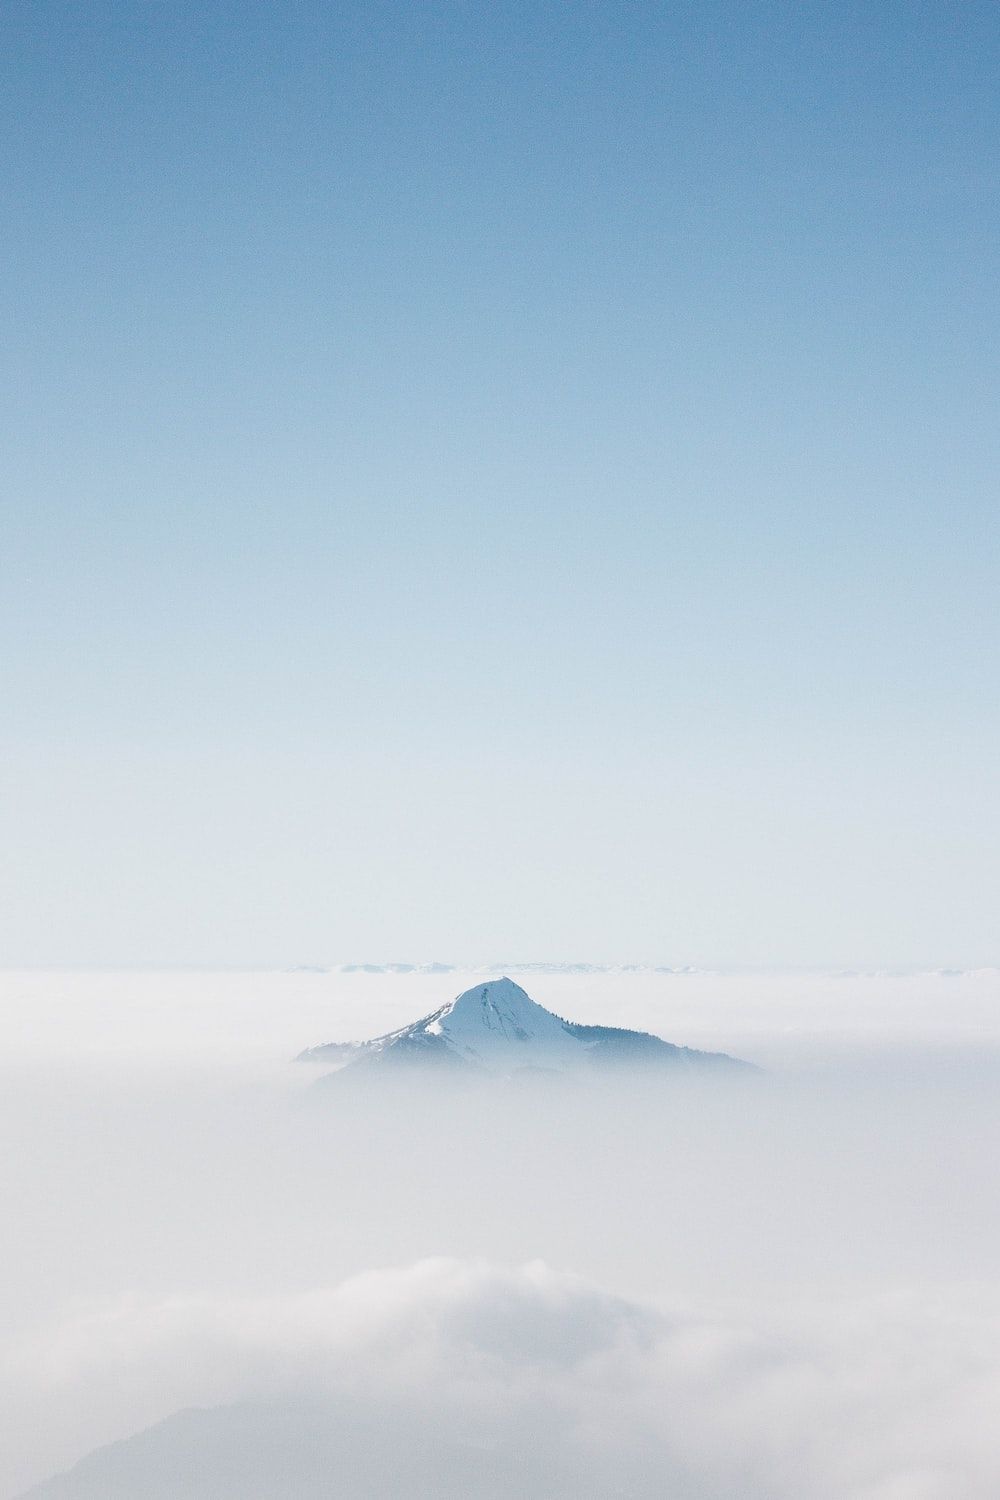  Berg Hintergrundbild 1000x1500. Foto zum Thema Schneebedeckter berg unter blauem himmel tagsüber